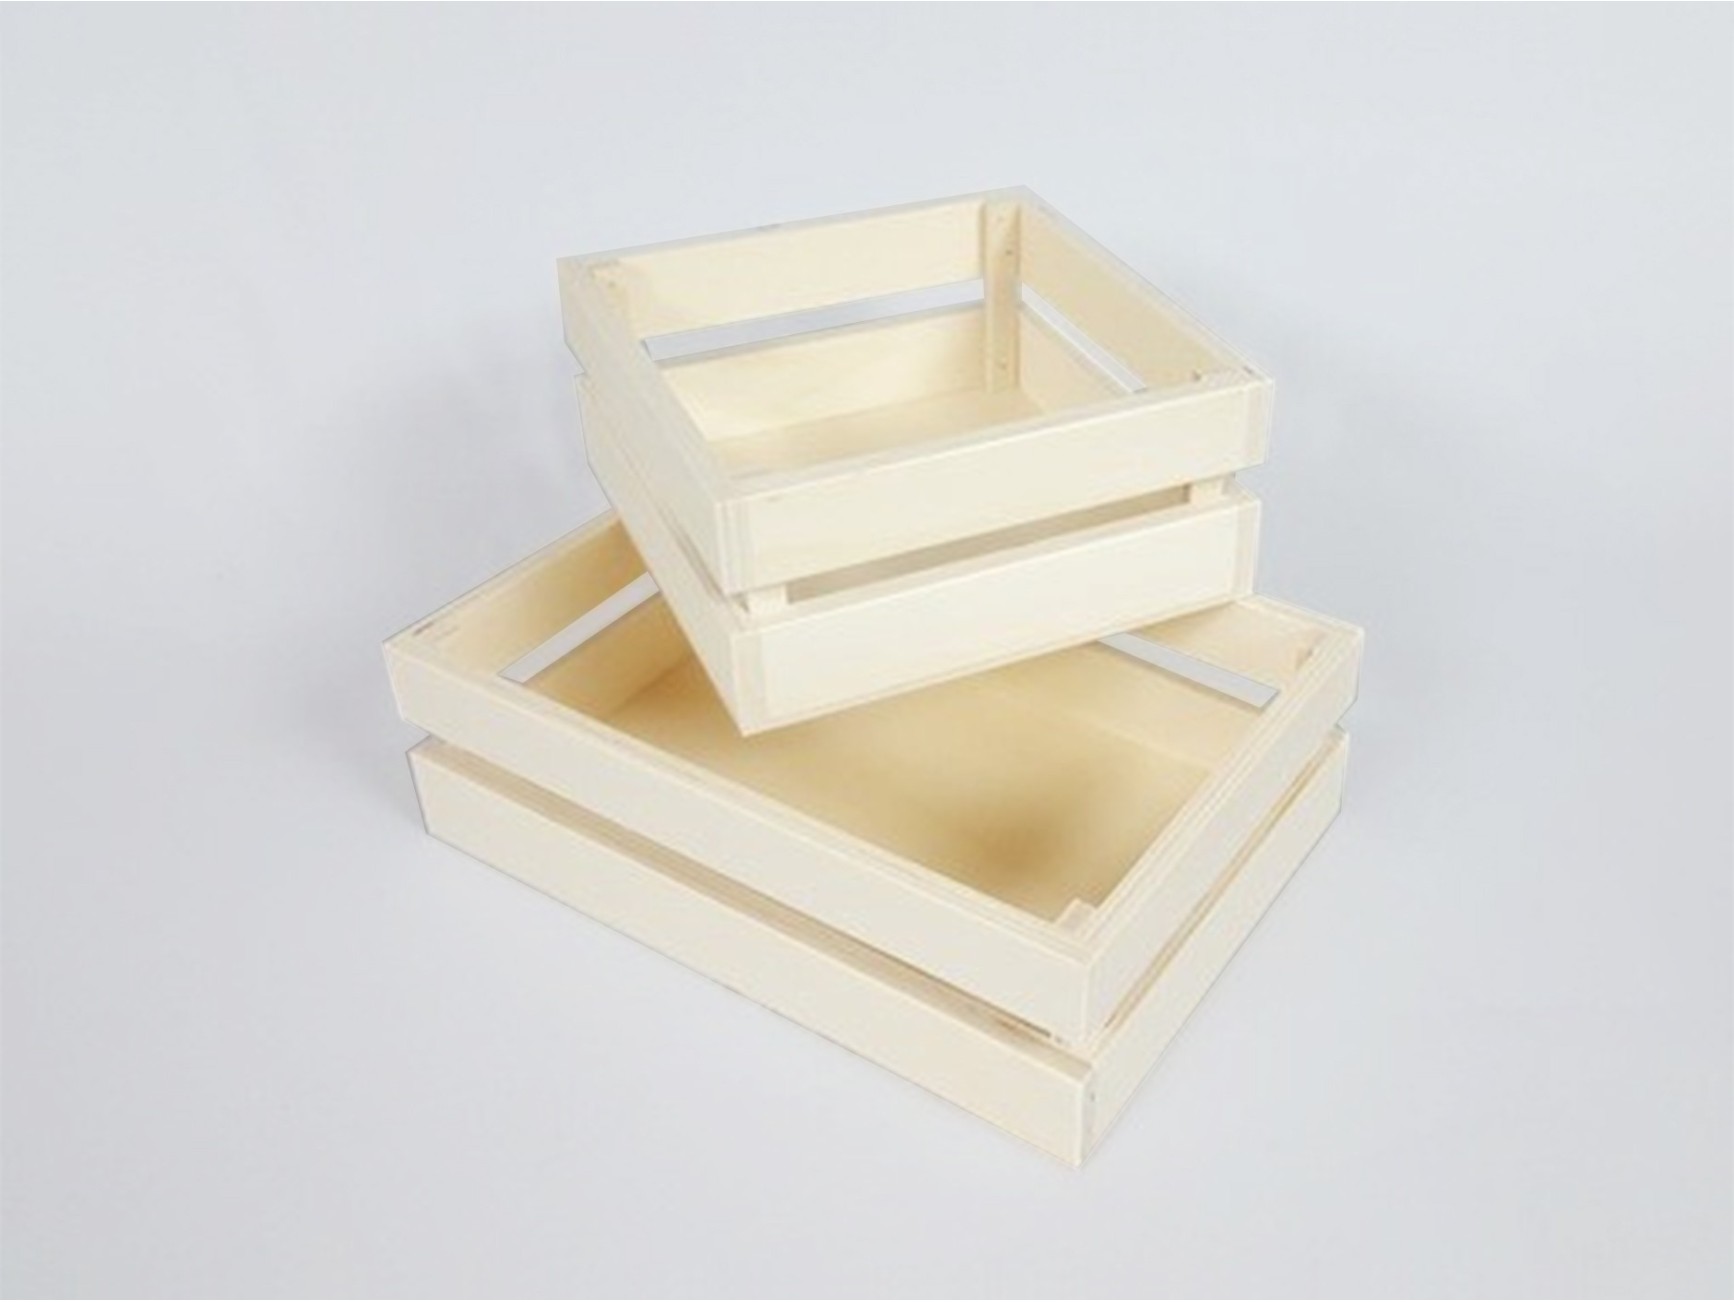 PHOENANCEE Caja de madera para almacenamiento, caja decorativa de madera,  juego de 3, cajas nido rústicas con asas, cesta de contenedor de granja